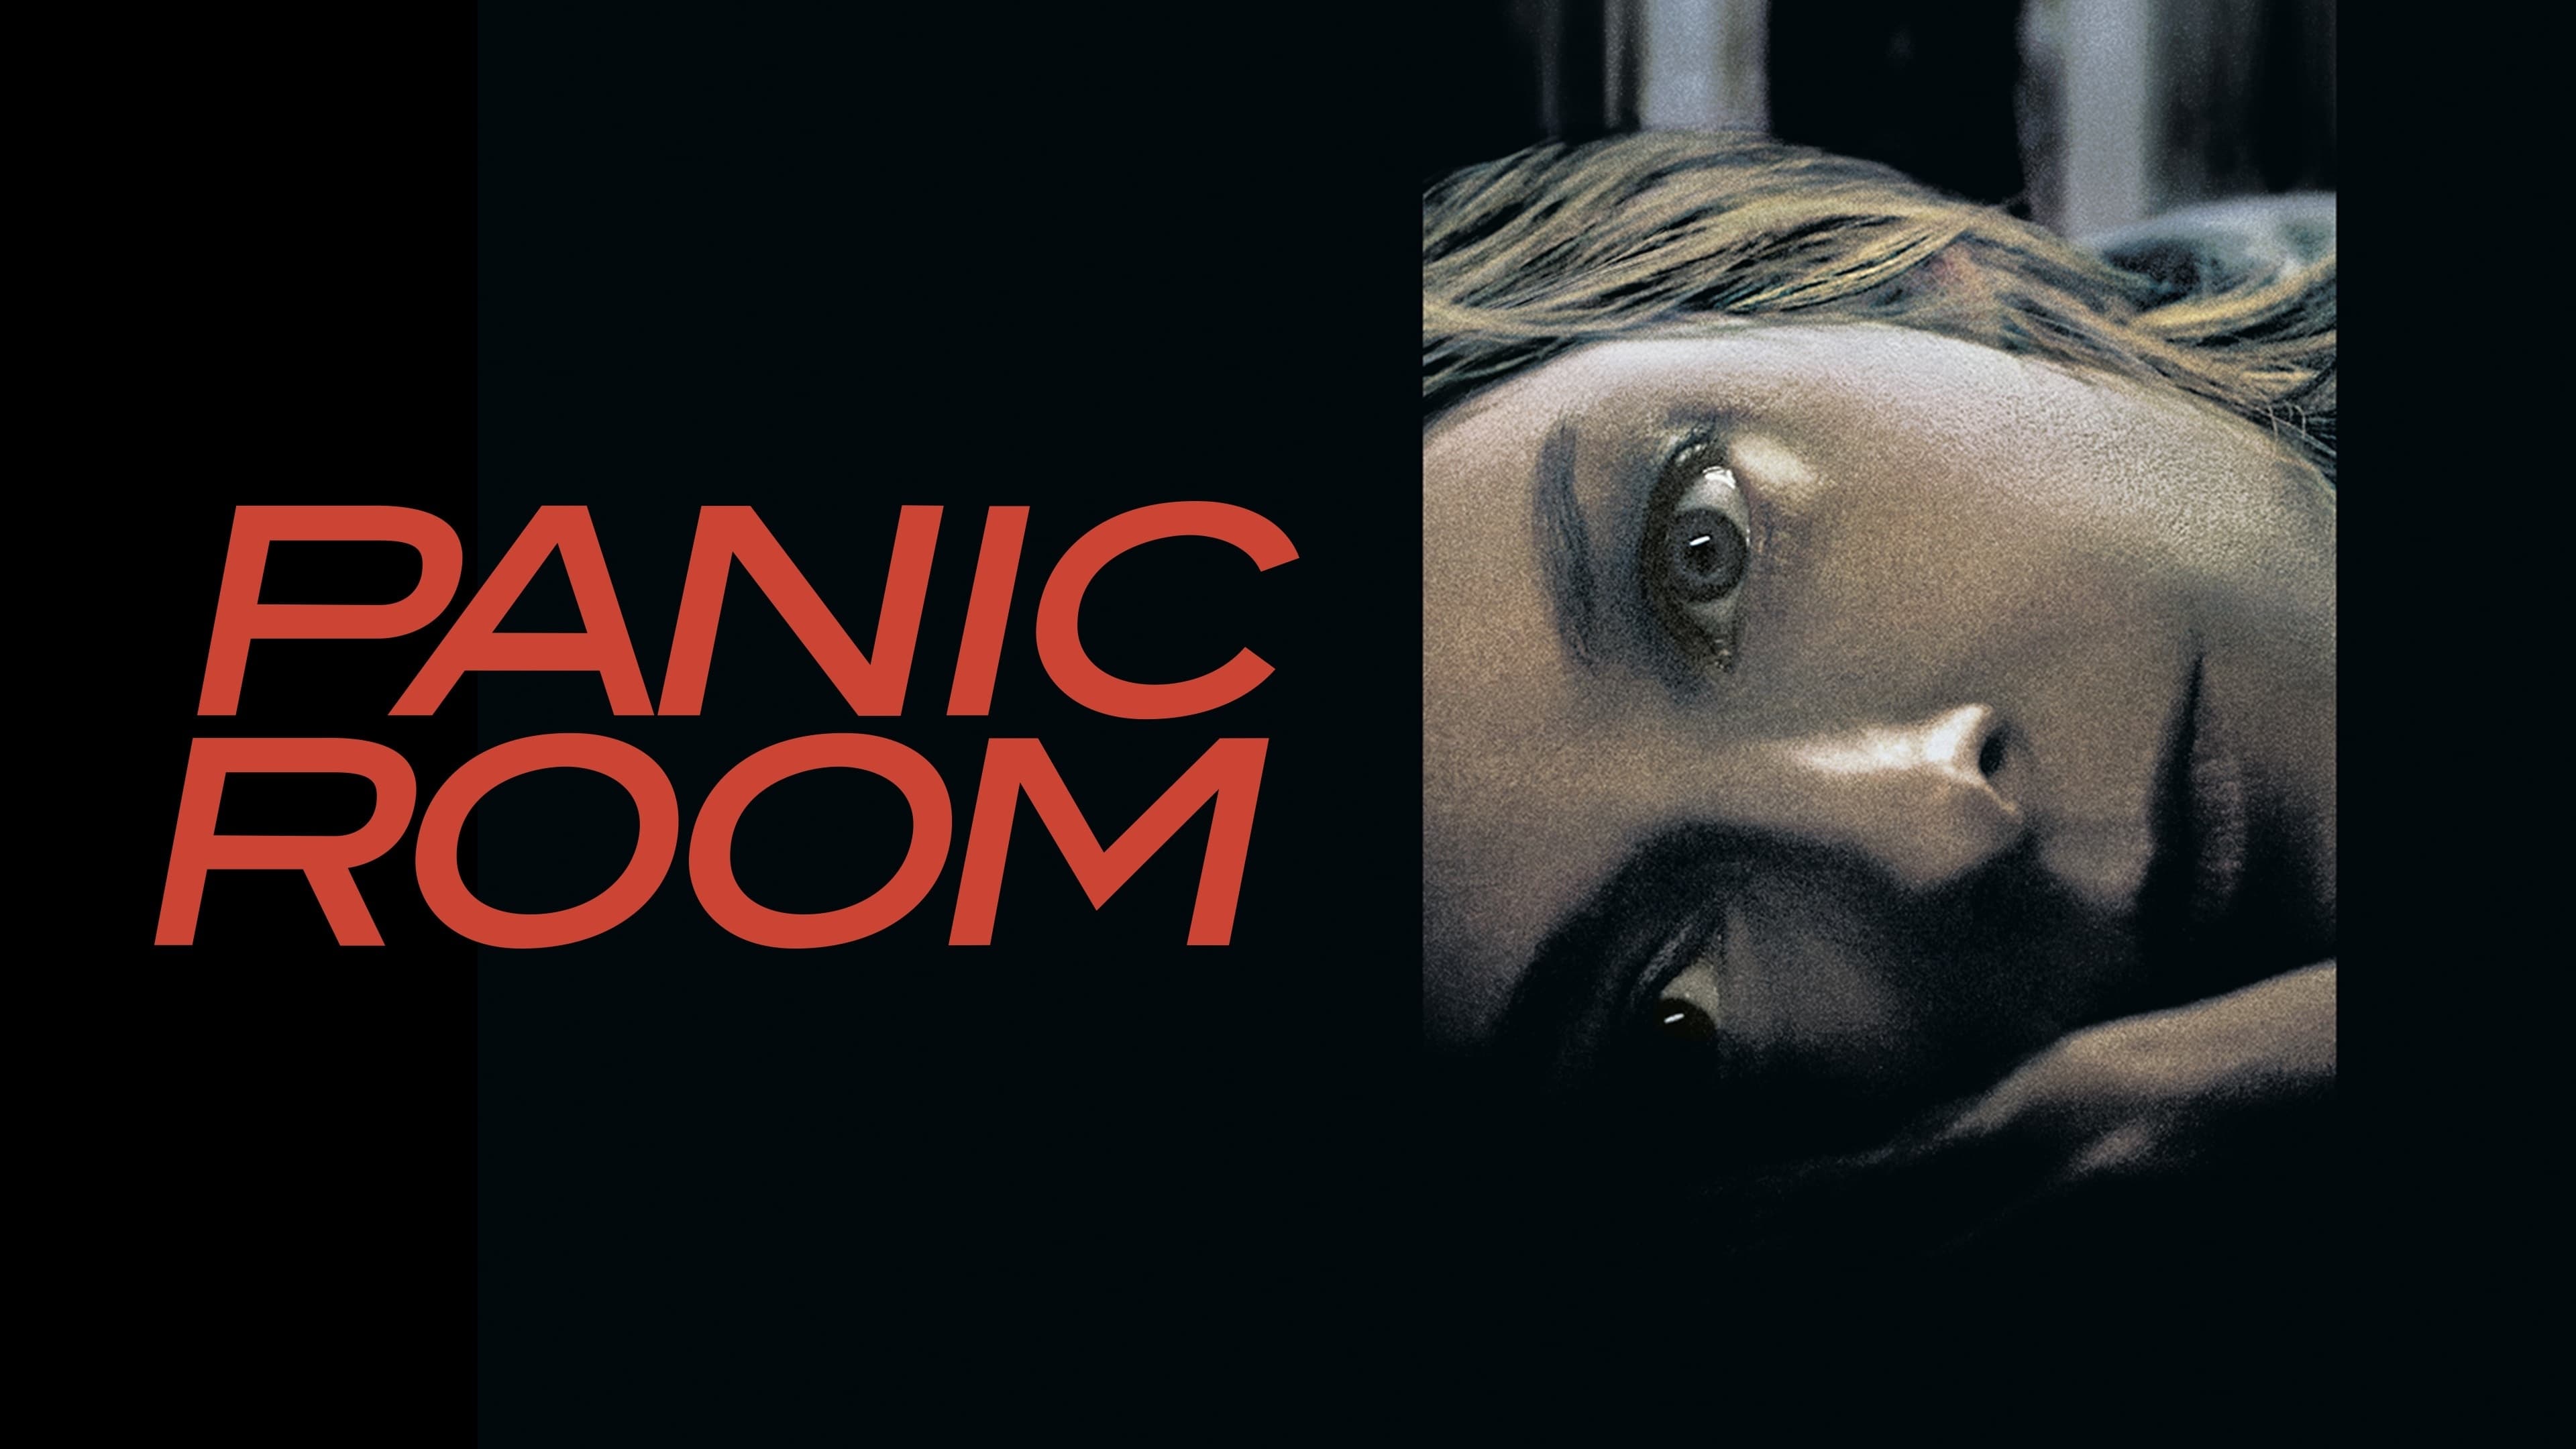 La habitación del pánico (2002)